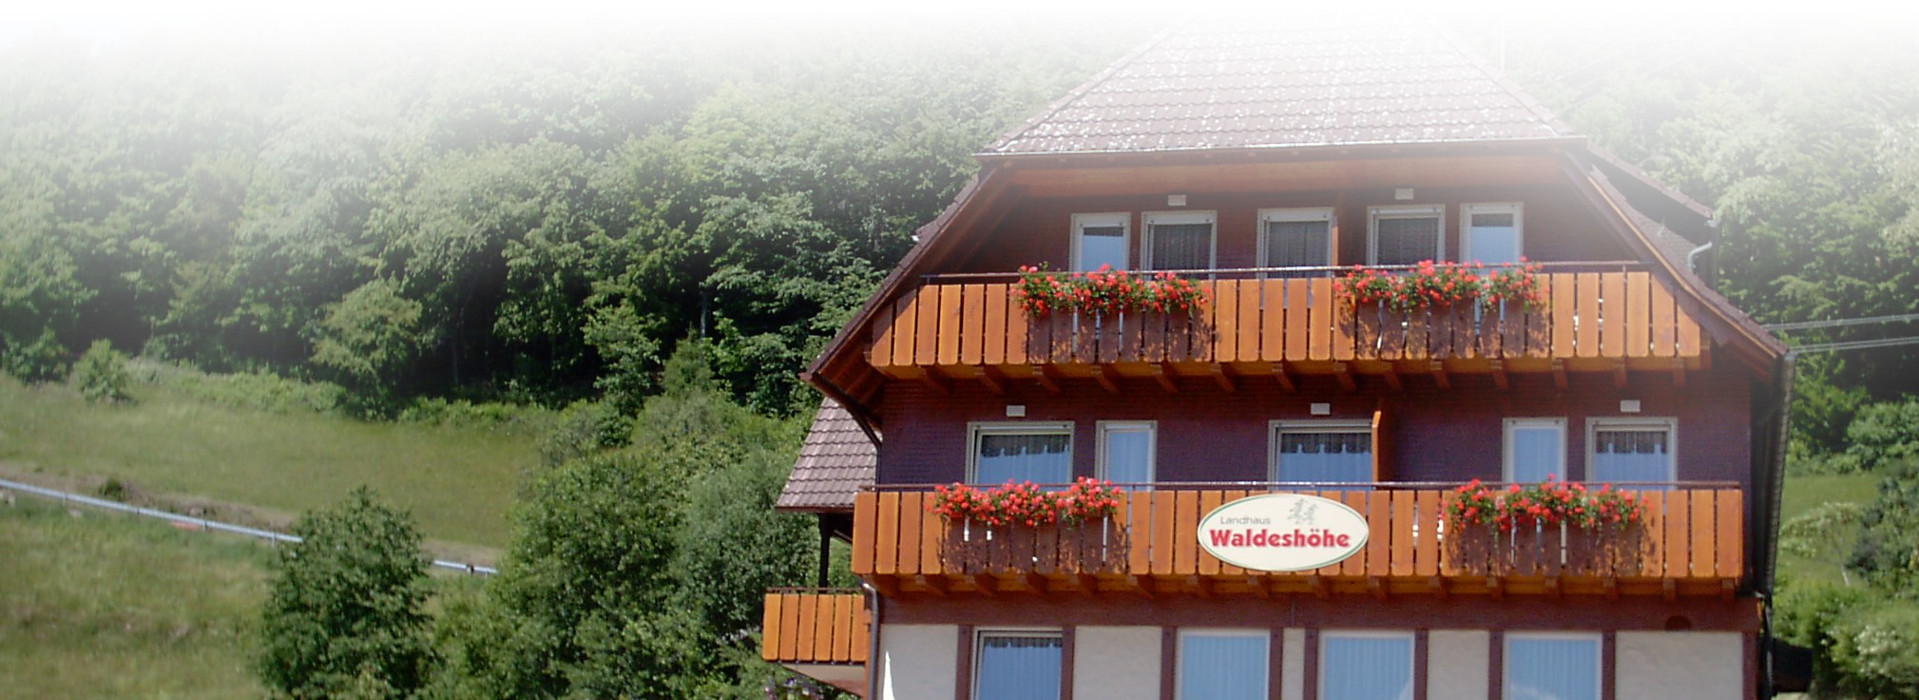 Ein Haus im Schwarzwaldstil, an den Balkonen hängen Blumenkästen. An einem Balkon hängt ein Schild mit der Aufschrift Waldeshöhe